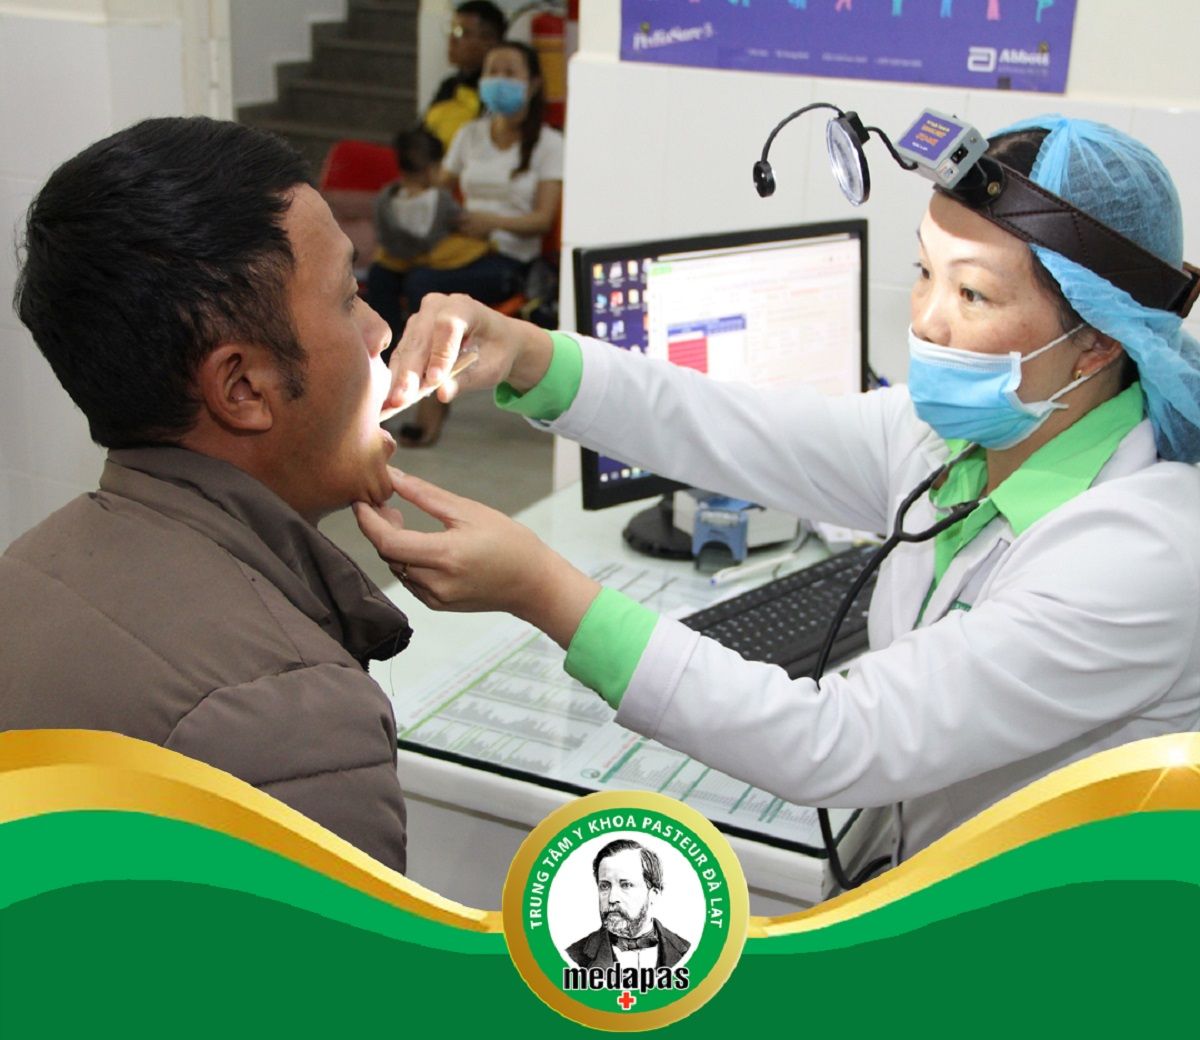 Uy tín của cơ sở y tế là một trong những tiêu chí lựa chọn điểm tầm soát ung thư khu vực Lâm Đồng